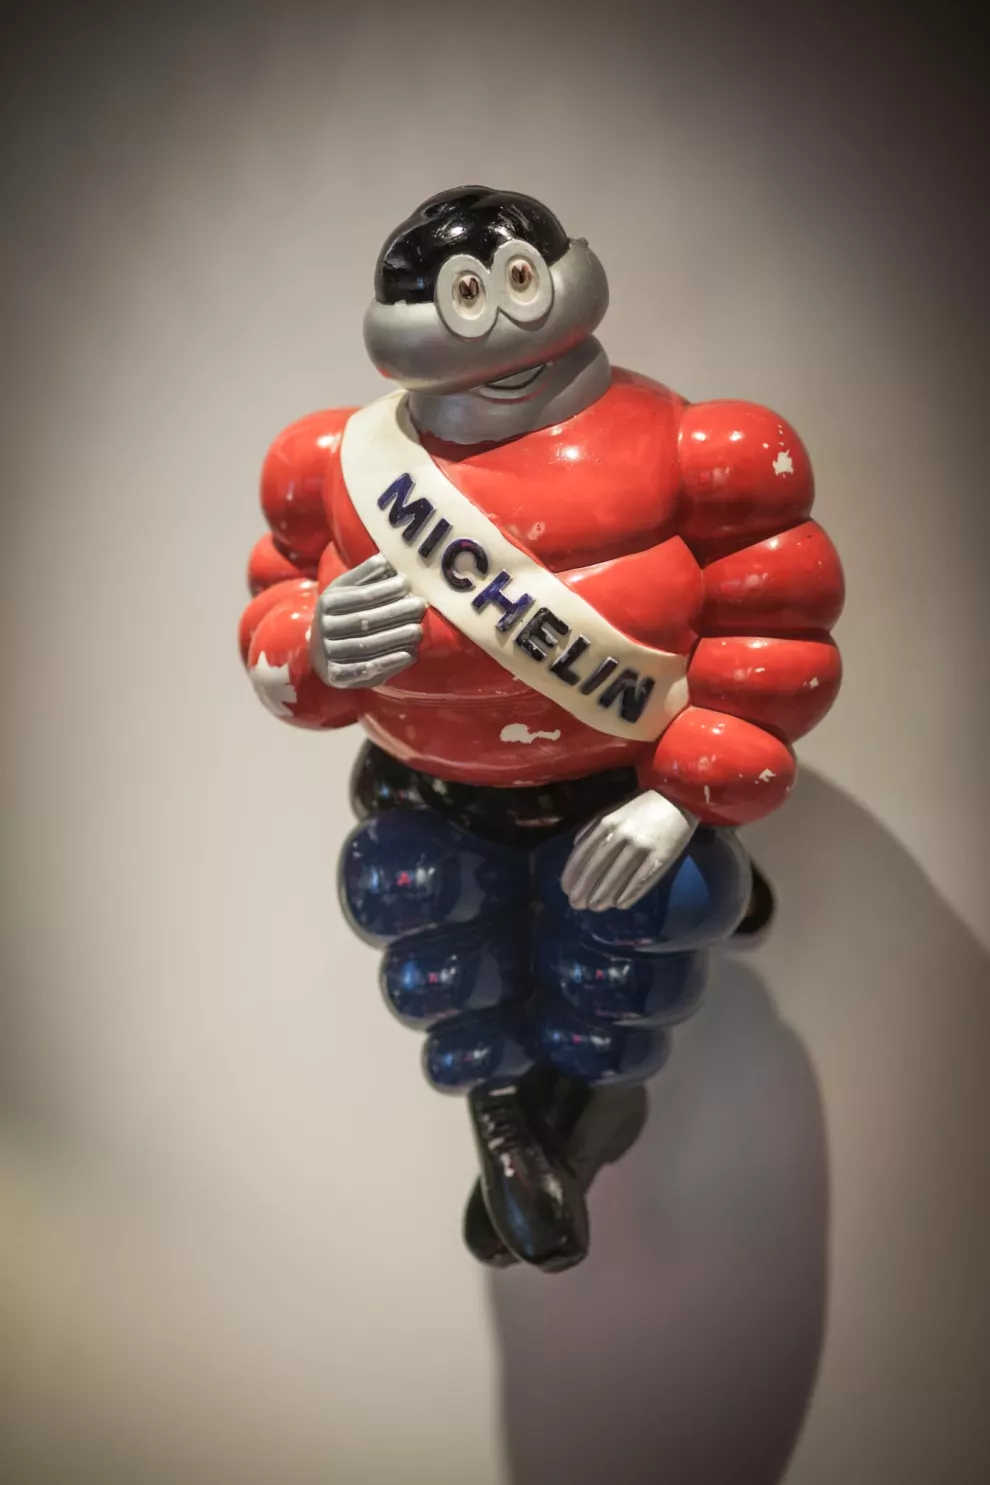 Arzak obtuvo su tercera estrella Michelin en 1989 y la mantiene hasta hoy. Foto: Cecilia Lutufyan